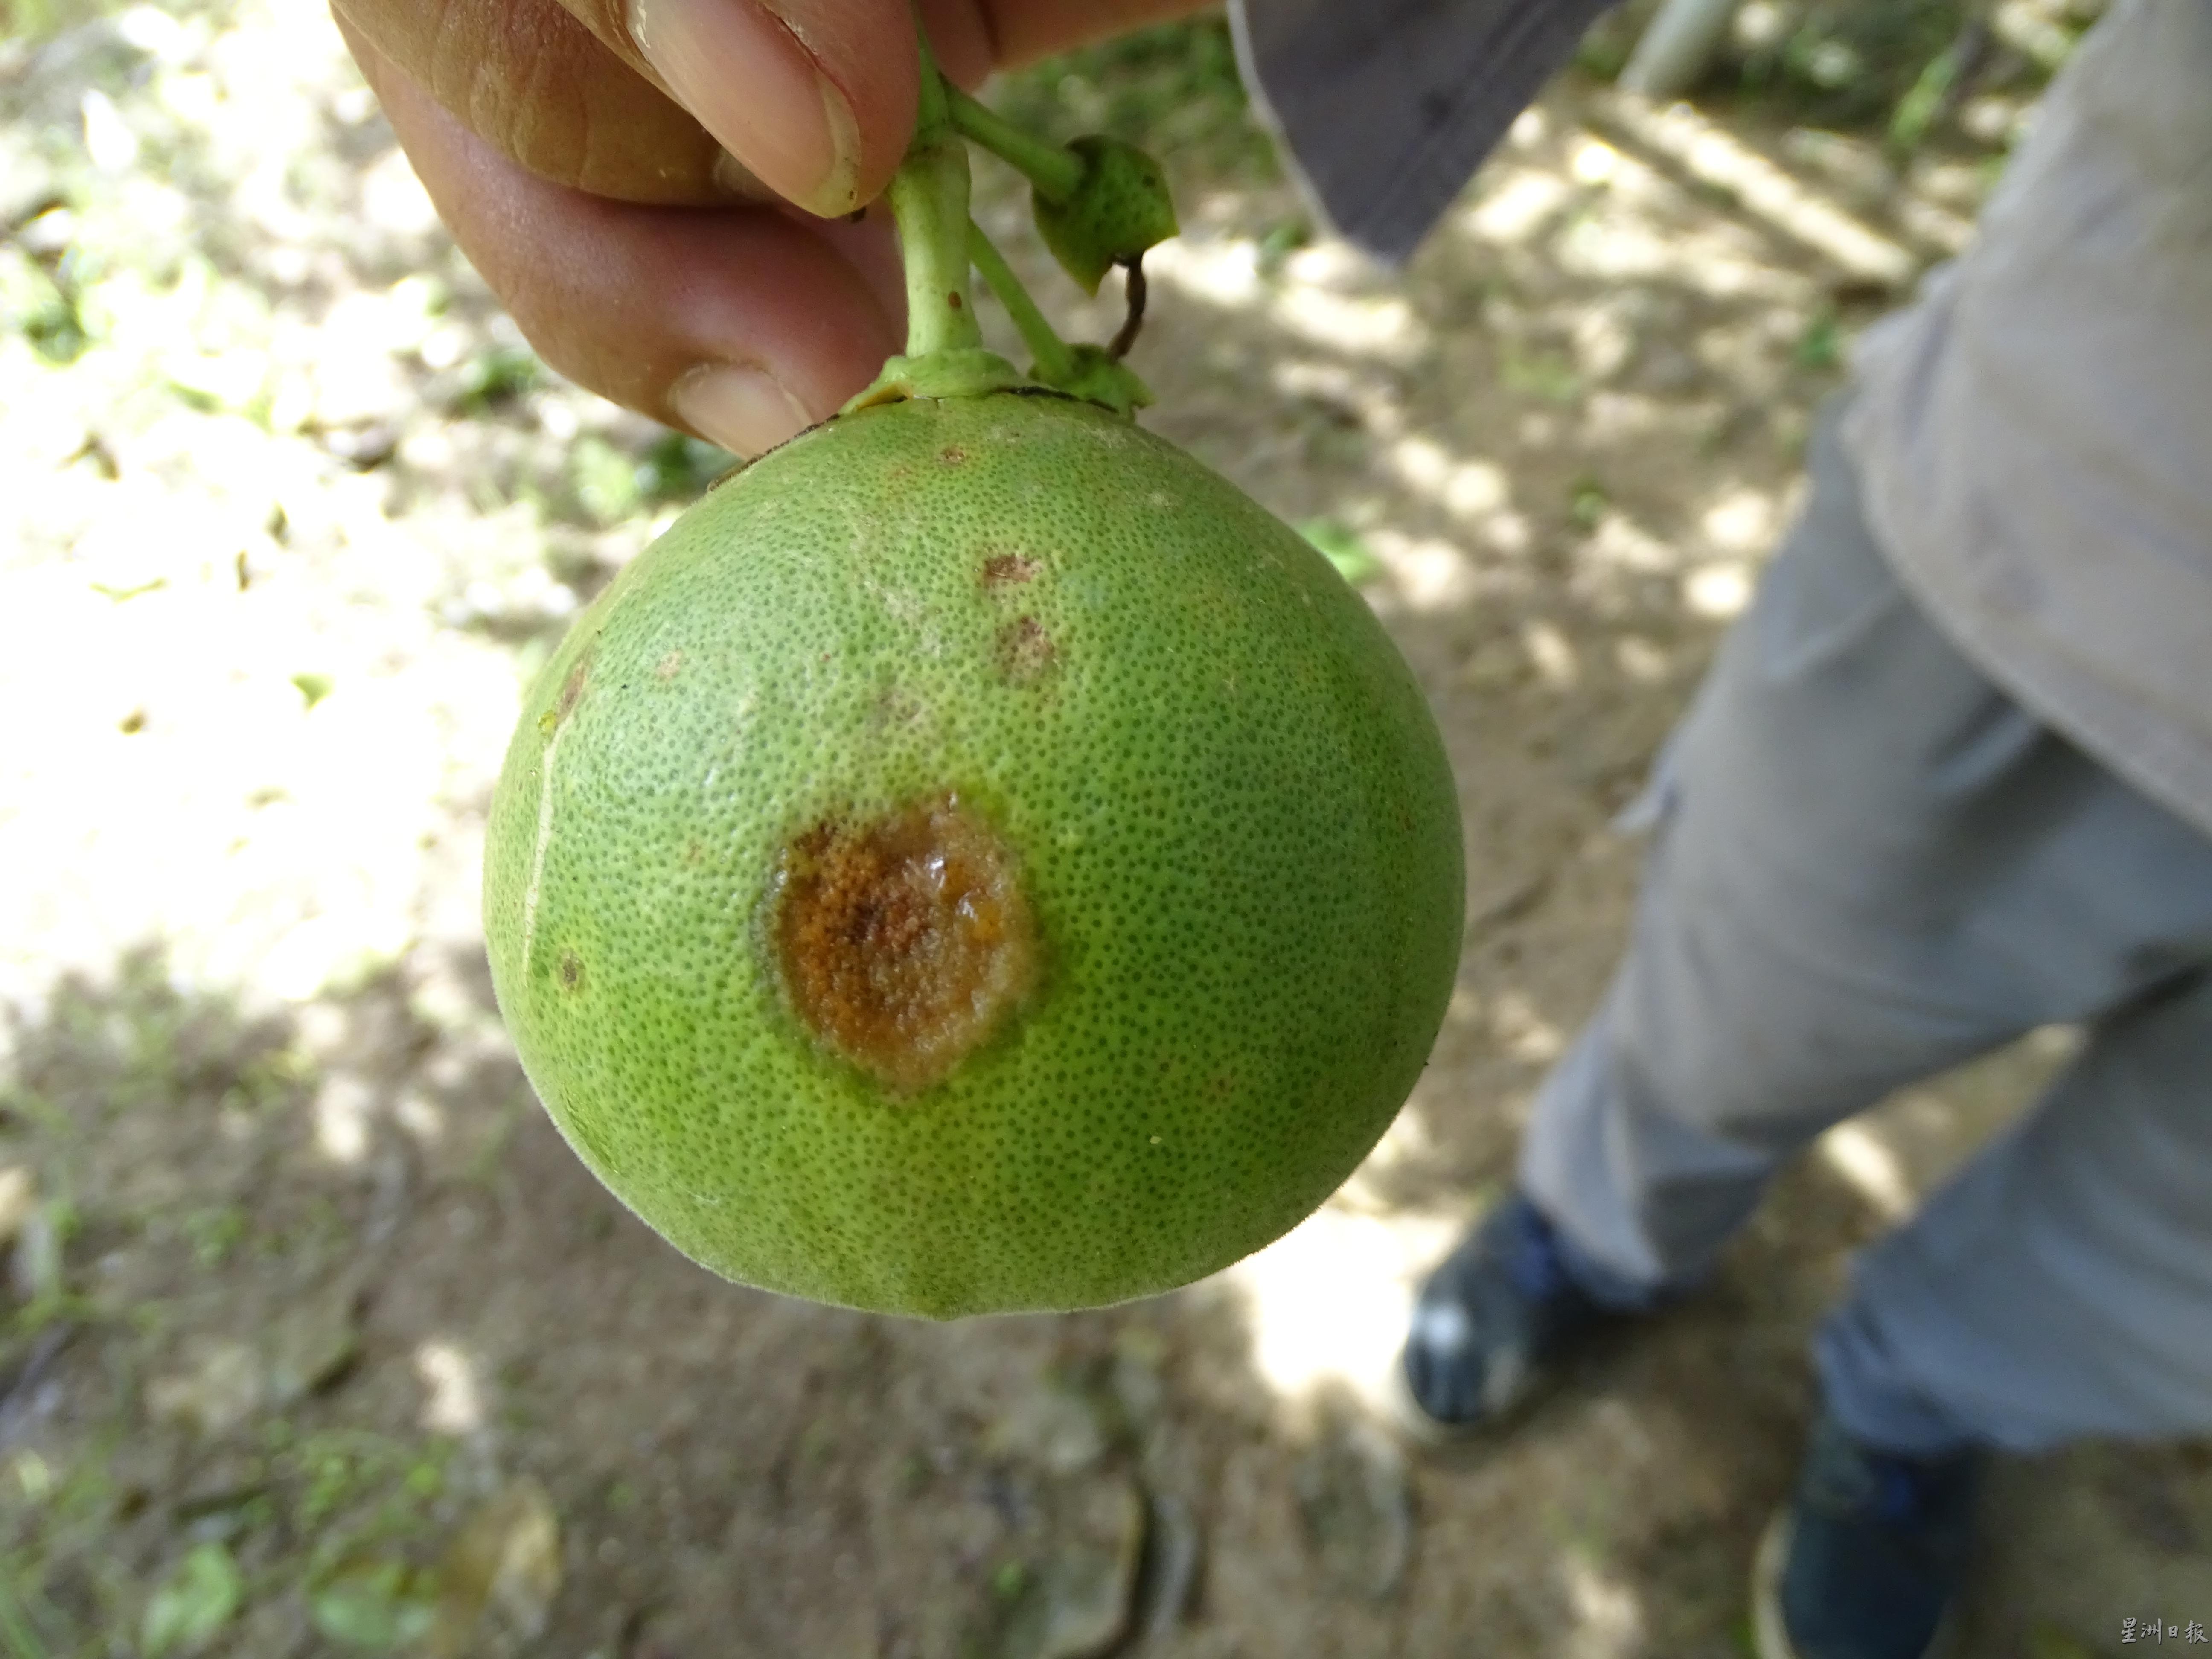 俗称“铁锈病”的病菌，会让柚子表皮产生如同生锈的斑点，有的斑点甚至会扩大，导致柚子不能食用。

